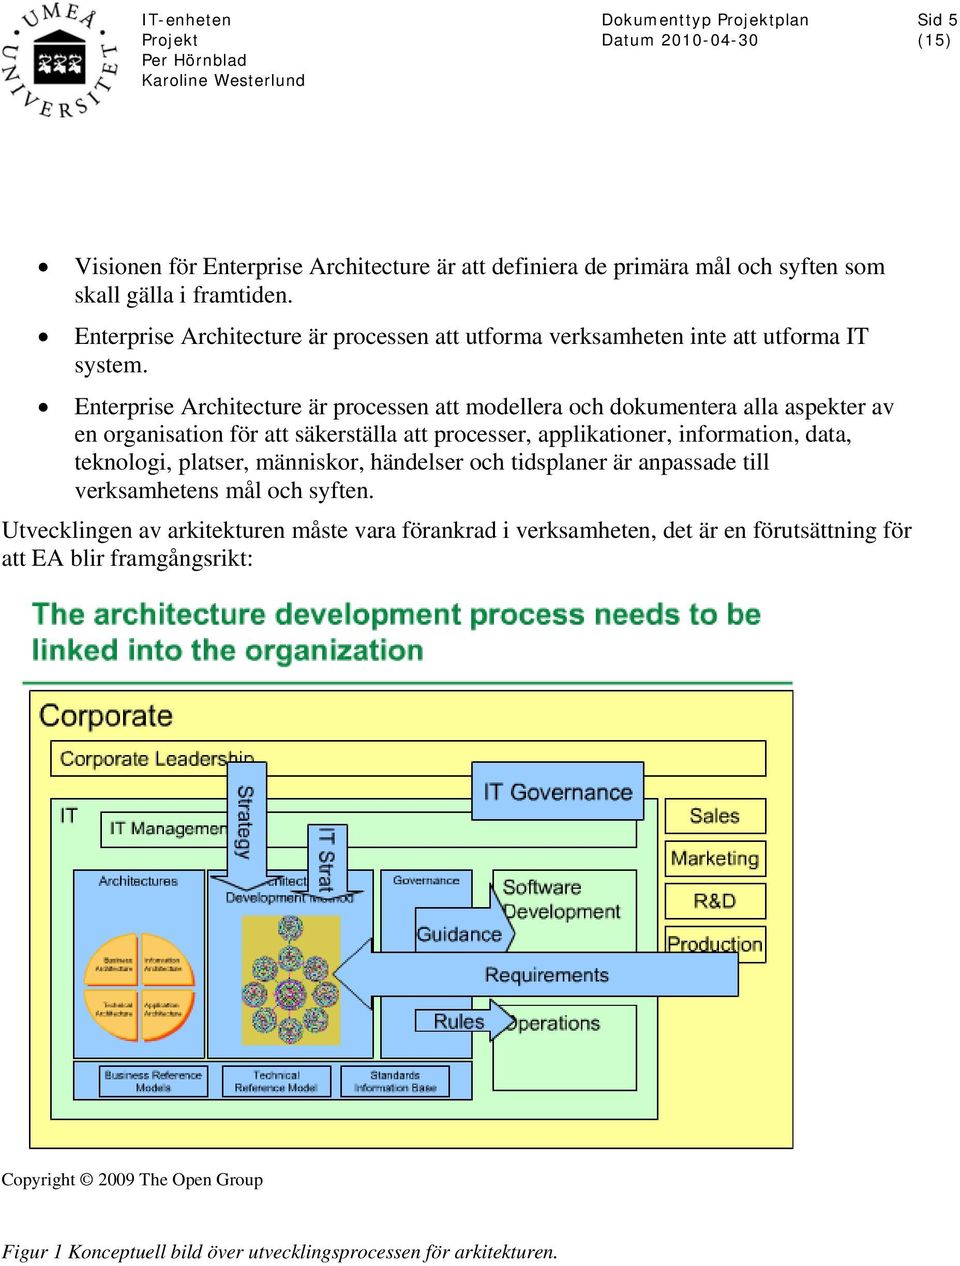 Enterprise Architecture är processen att modellera och dokumentera alla aspekter av en organisation för att säkerställa att processer, applikationer, information, data,